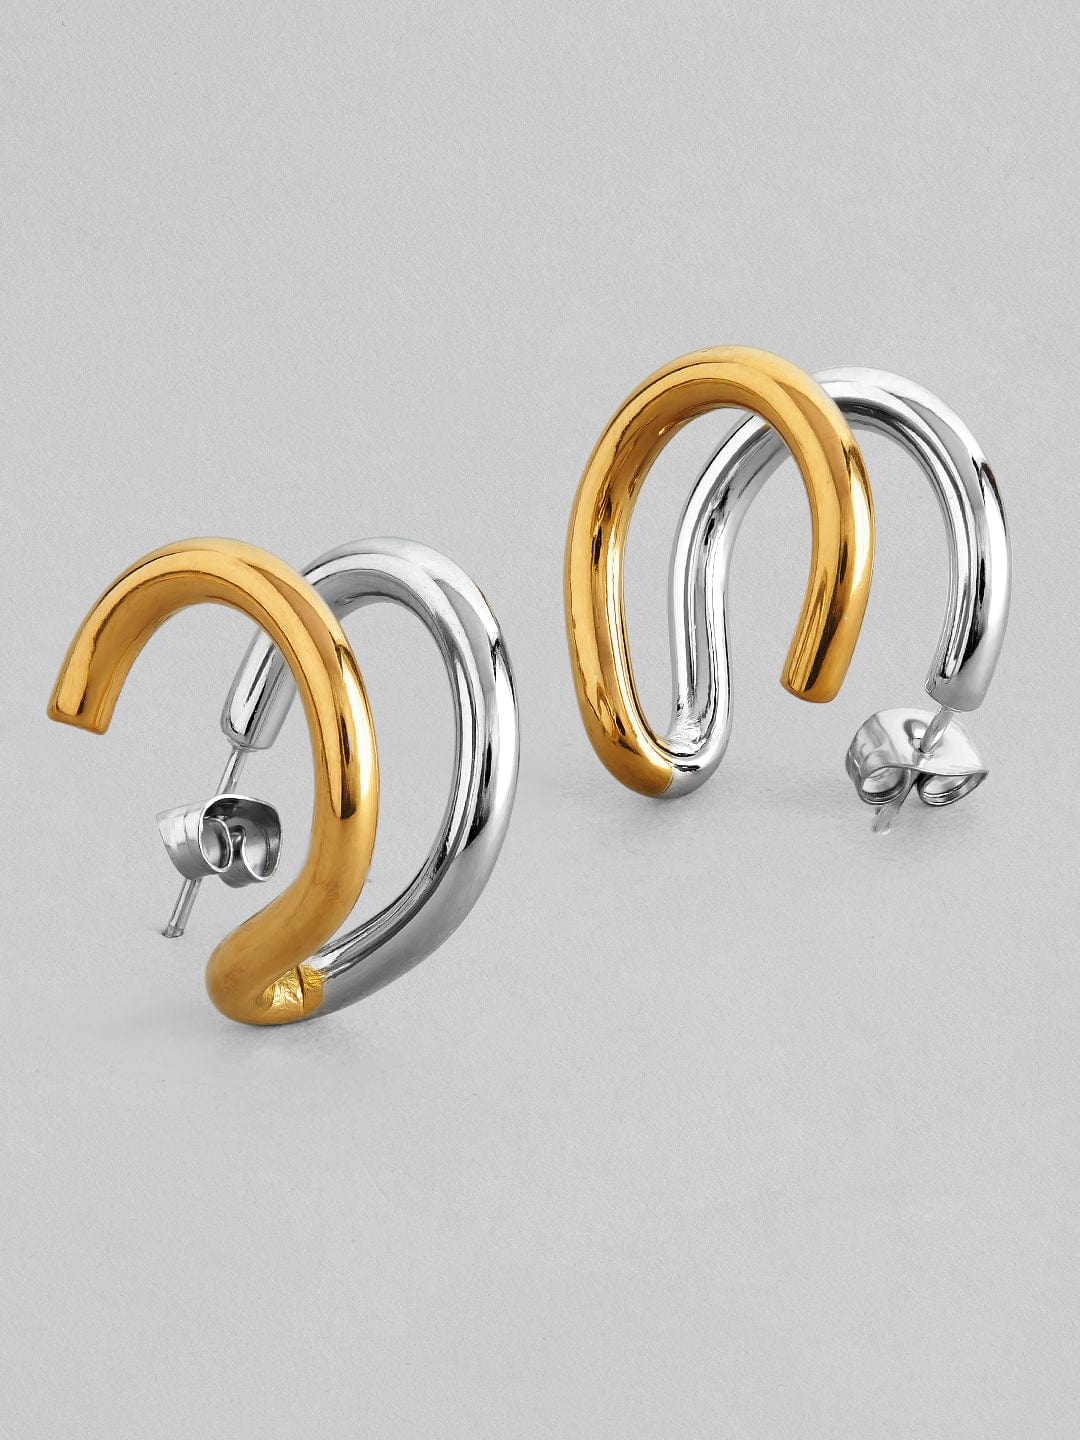 Rubans Voguish 18K Gold And Rhodium Plated Stainless Steel Waterproof Stud Earrings. Earrings